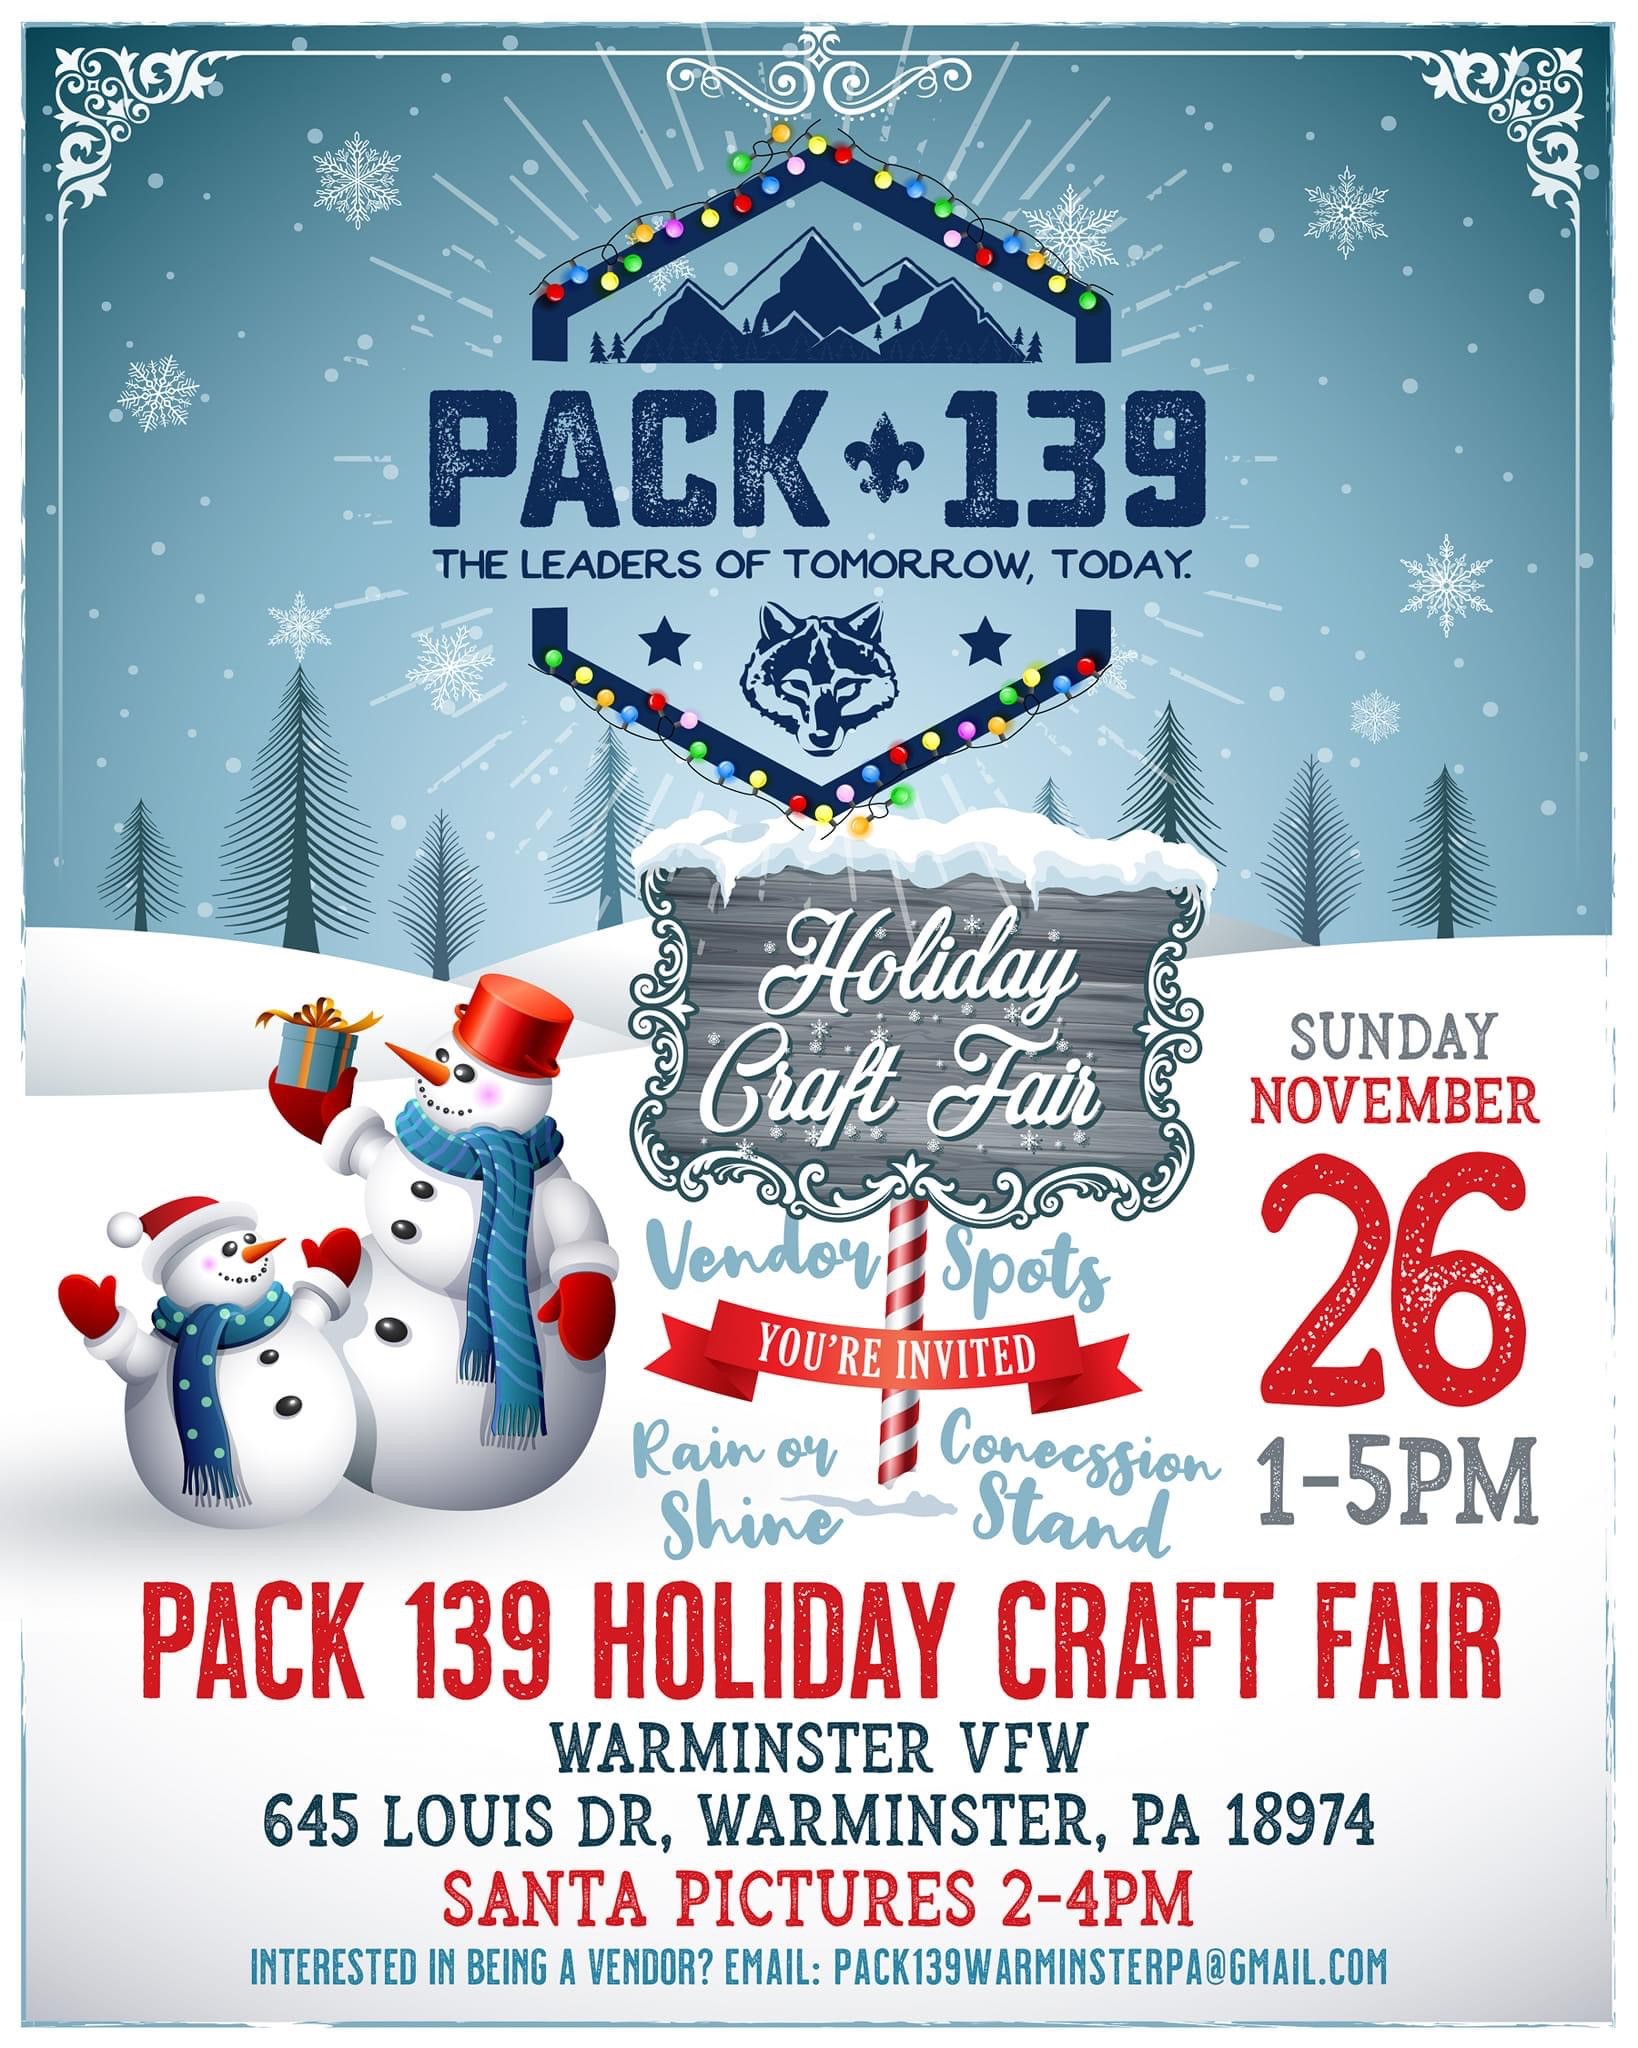 Jax’s at Pack 139 Holiday Craft Fair